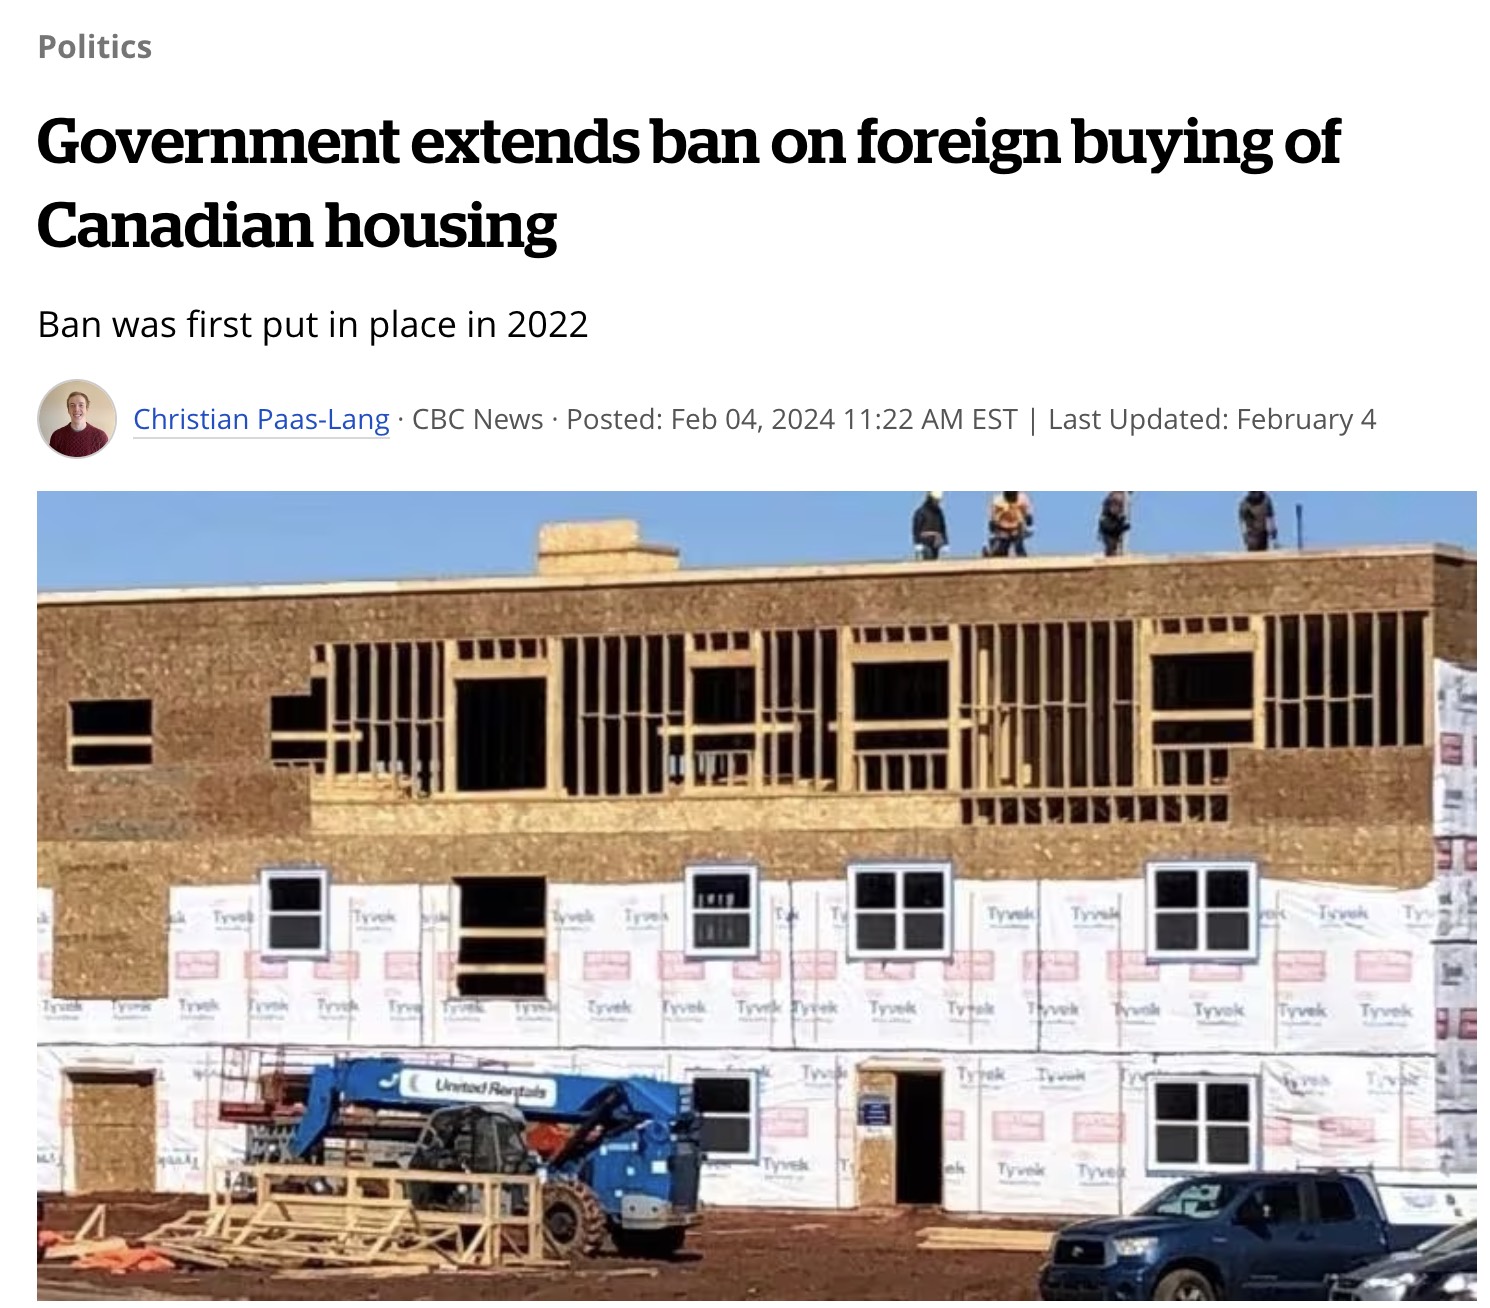 加拿大财政部长宣布延长外国买家购房禁令至2027年初